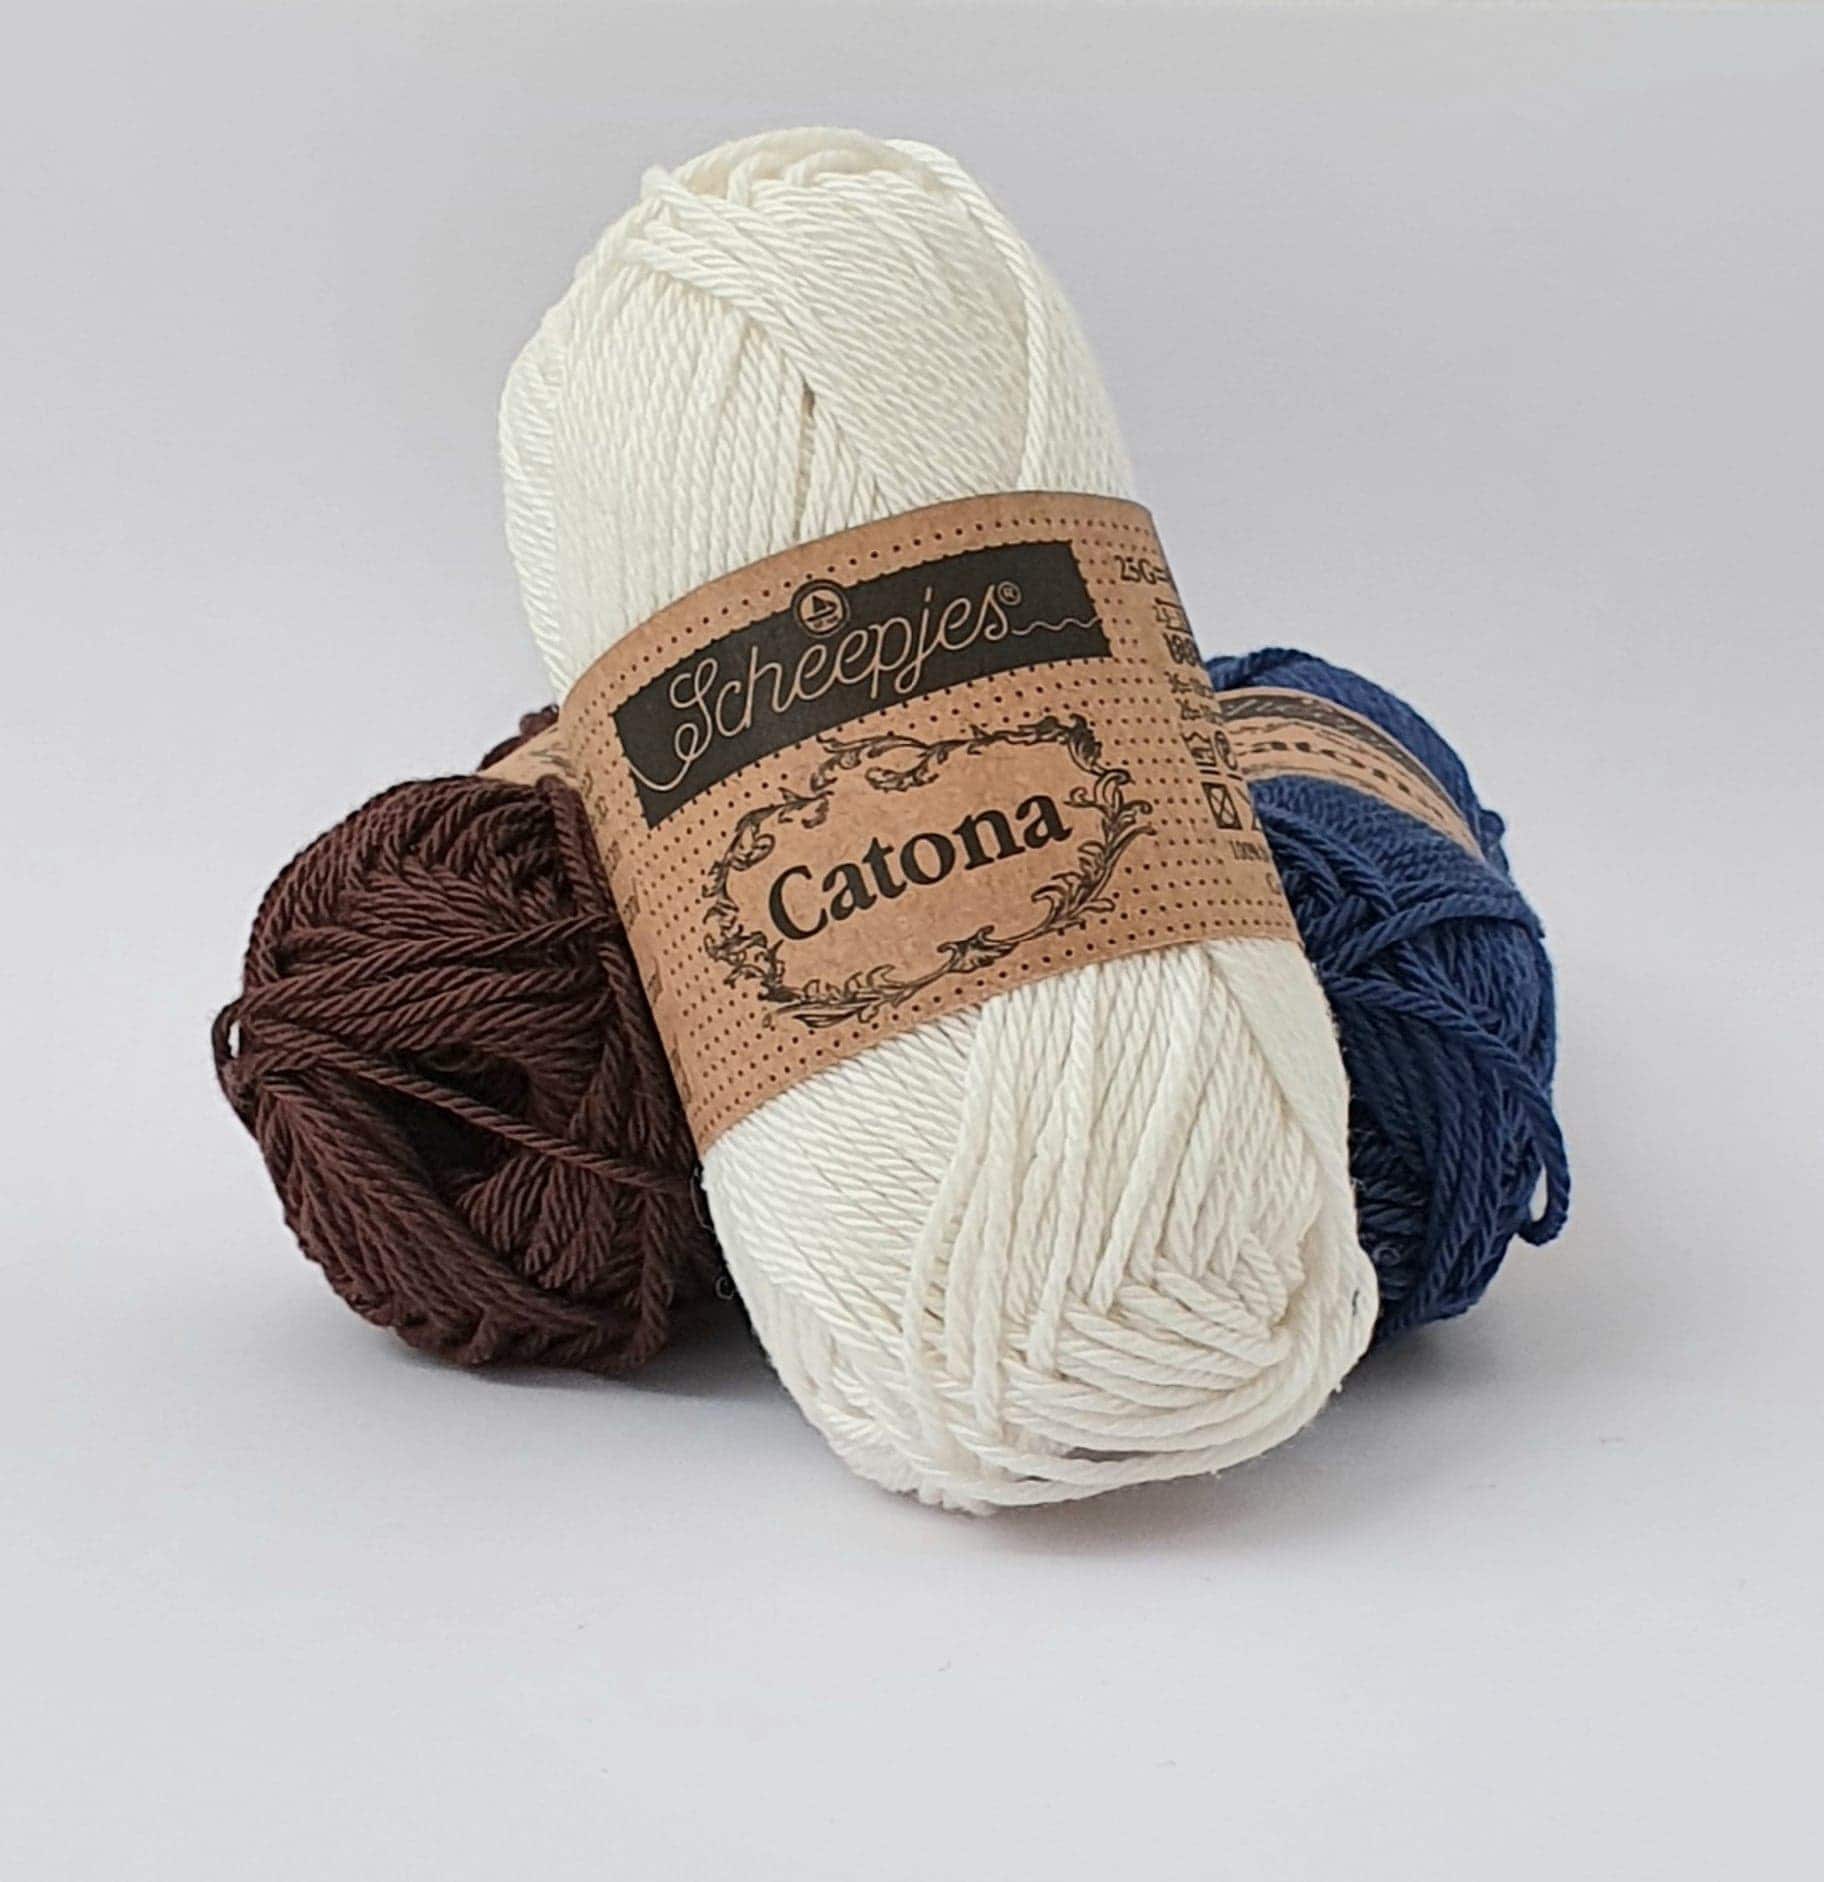 Catona Marron fil coton à tricoter, crocheter 50g pour les amigurumis,  vestes, pulls, foulard Scheepjes 157 root beer